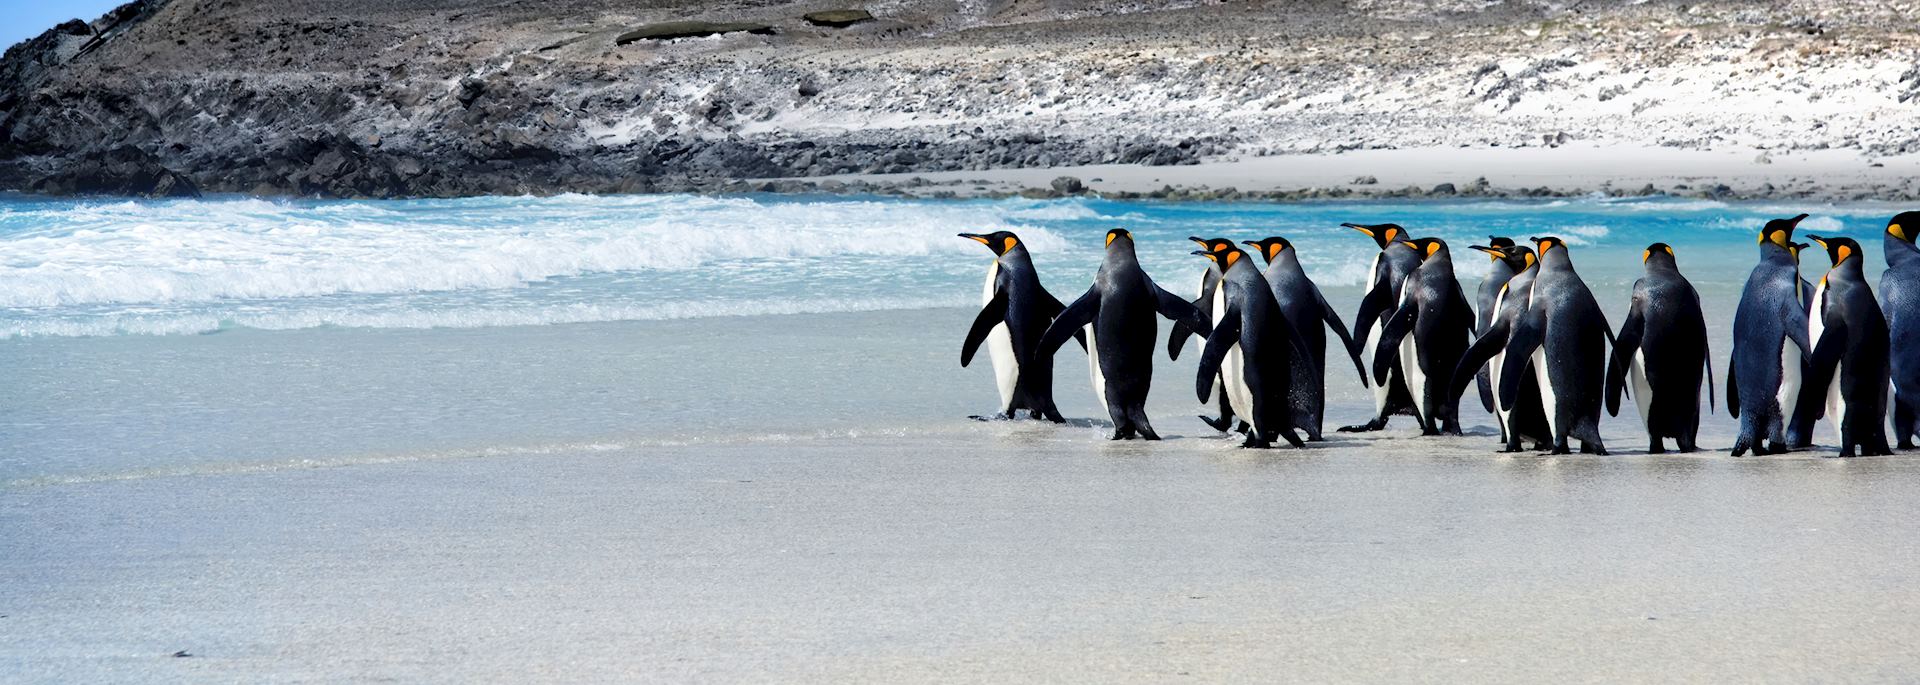 King penguins, Falkland Islands